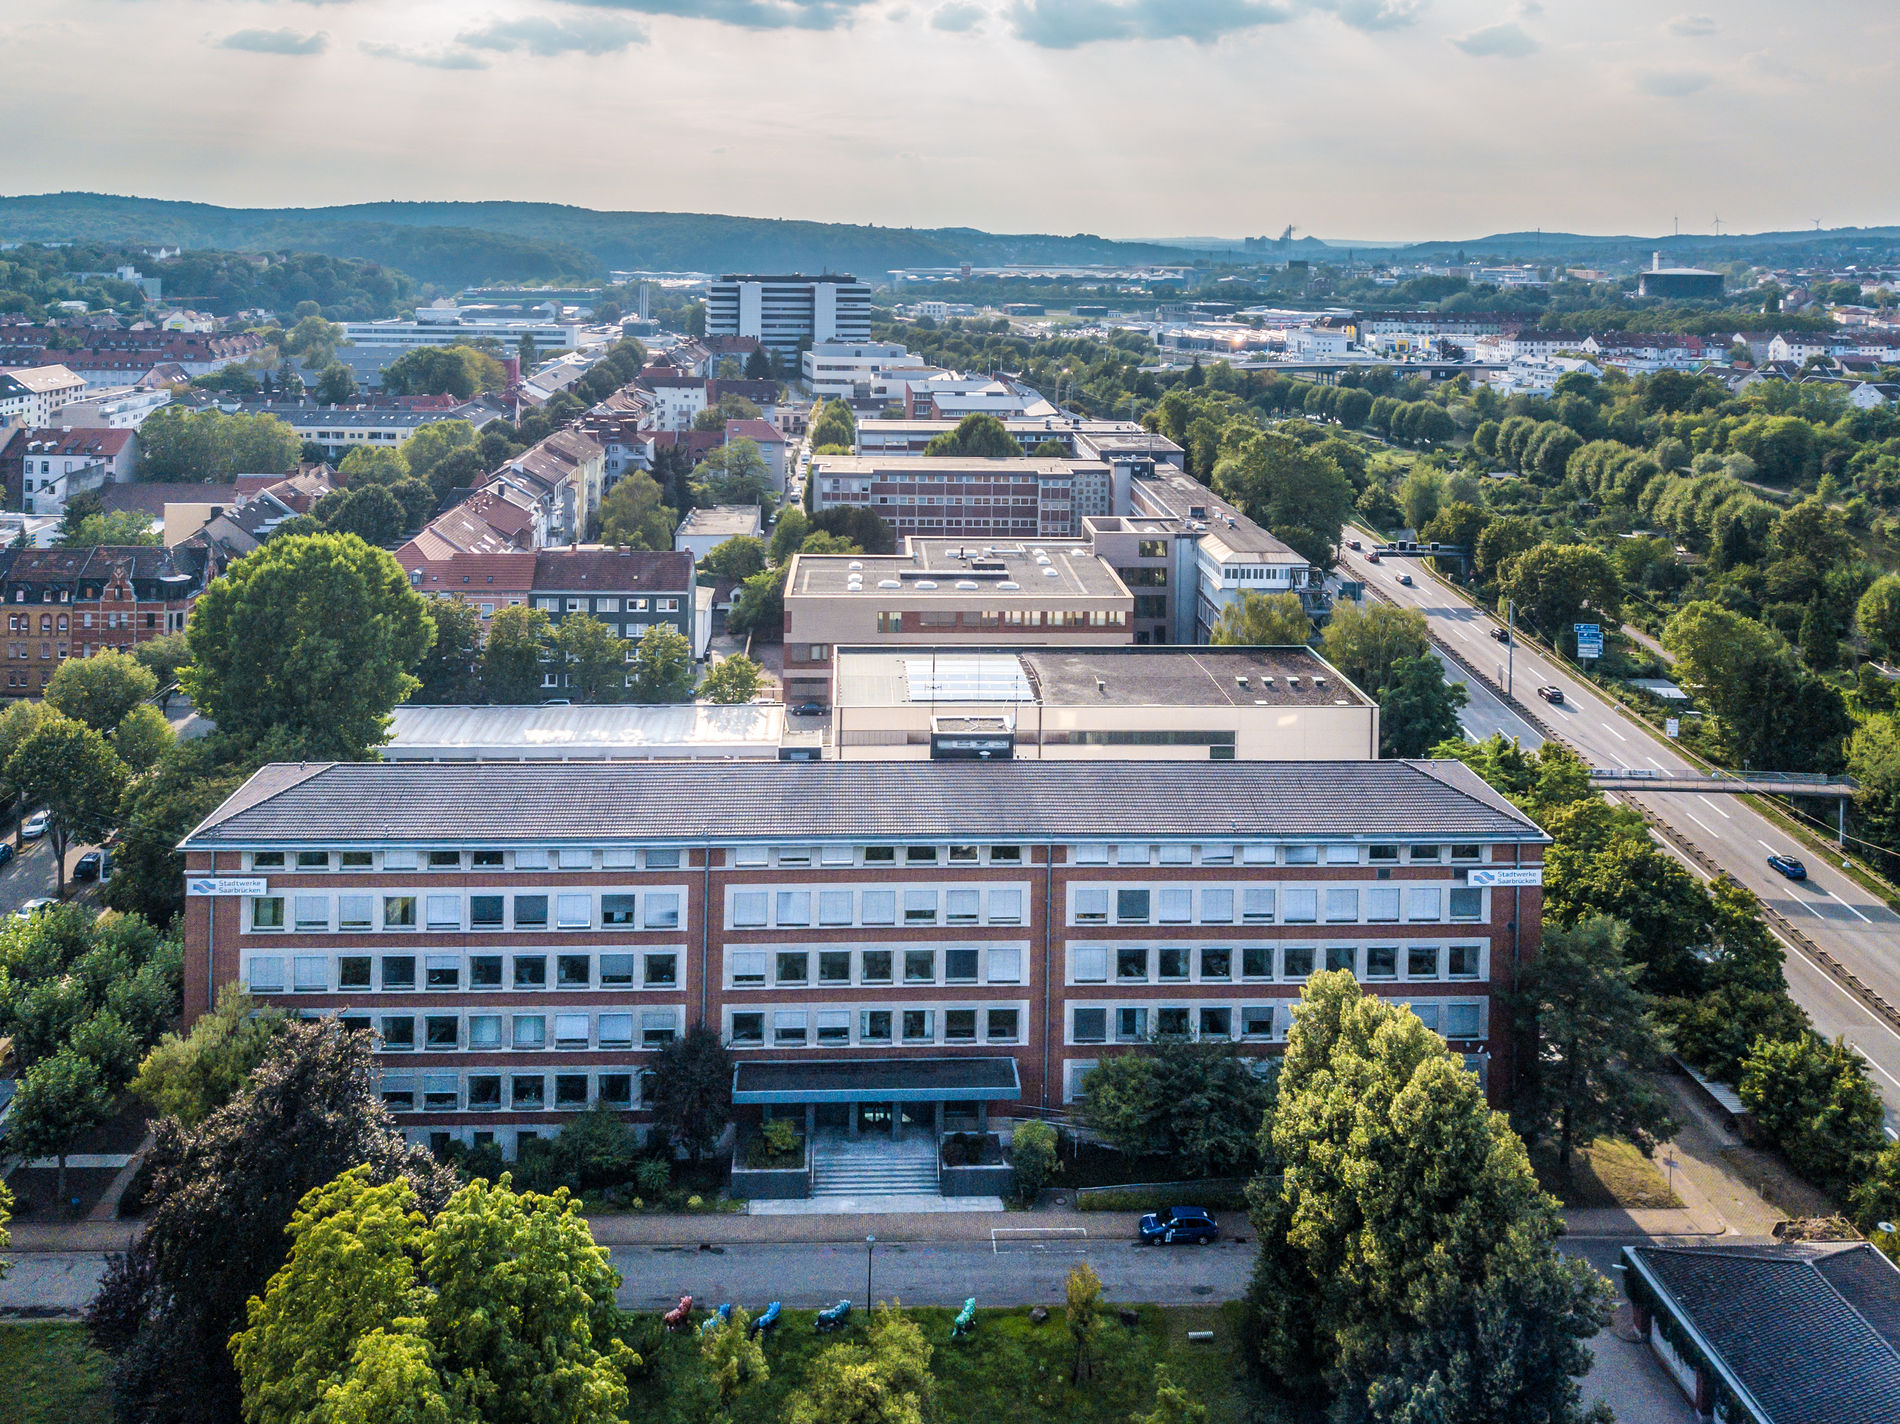 Drone shot of the administration buildings of Stadtwerke Saarbrücken